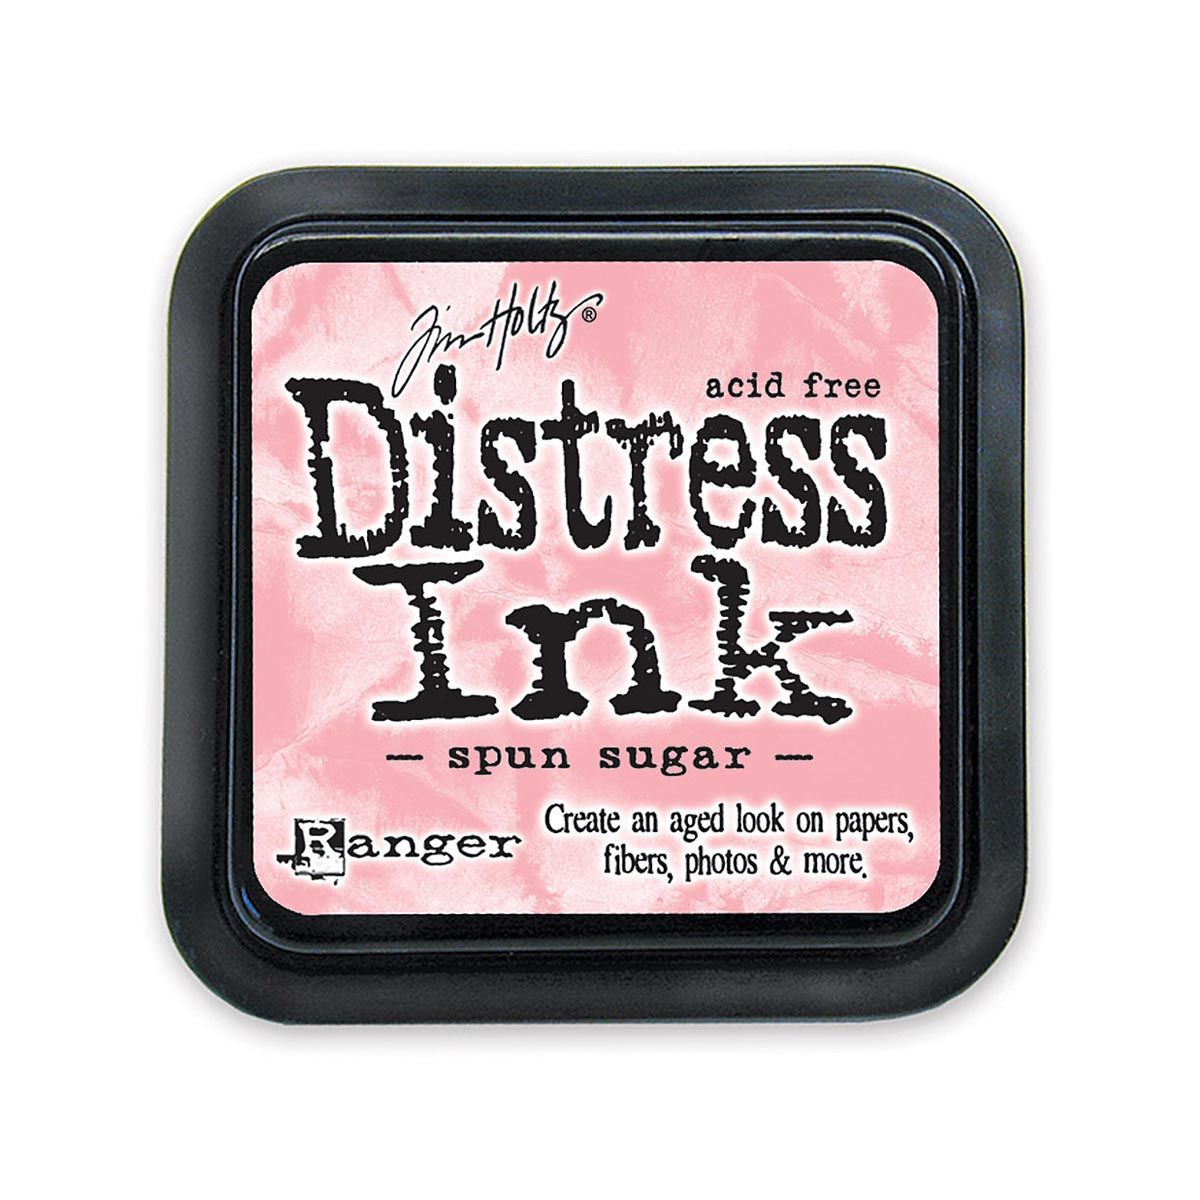 Tim Holtz Mini Distress Ink Pad Spun Sugar 1x1 inch